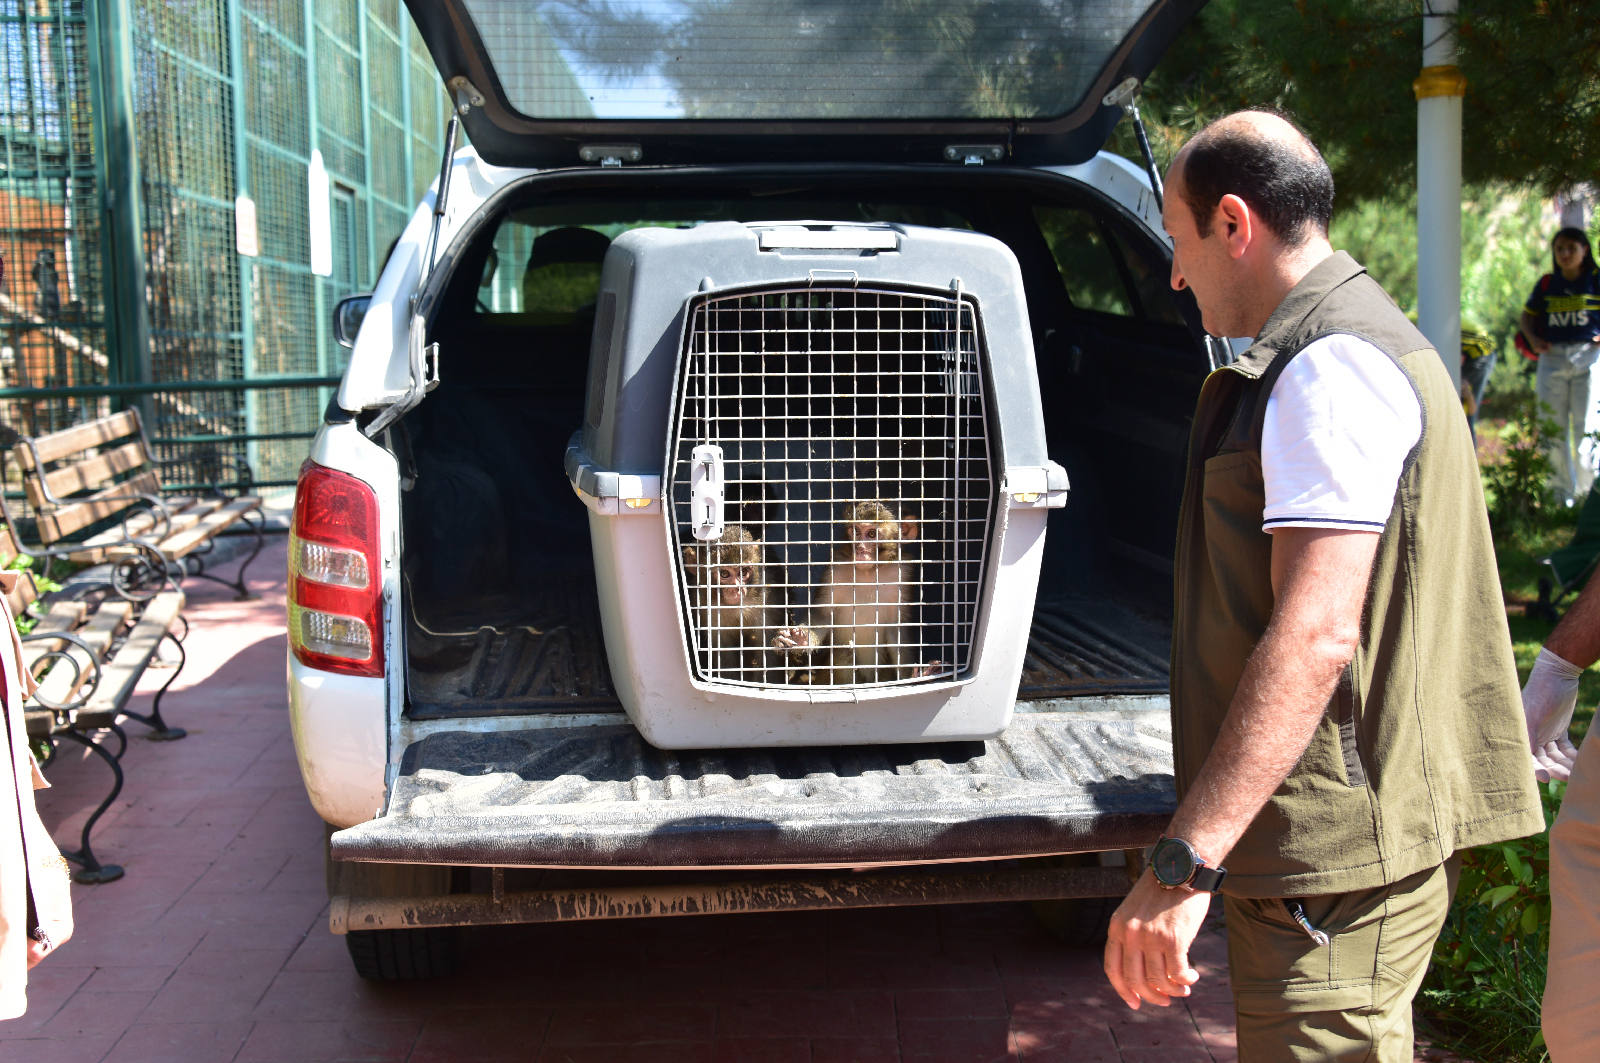 İran Sınırındaki Gürbulak Sınır kapısında kaçak olarak Türkiye’ye sokulmak istenirken  yakalanan 3 makak maymunu Ağrı Doğa Koruma Şube Müdürlüğü tarafından Malatya Büyükşehir Belediyesi Hayvanat bahçesine teslim edildi.